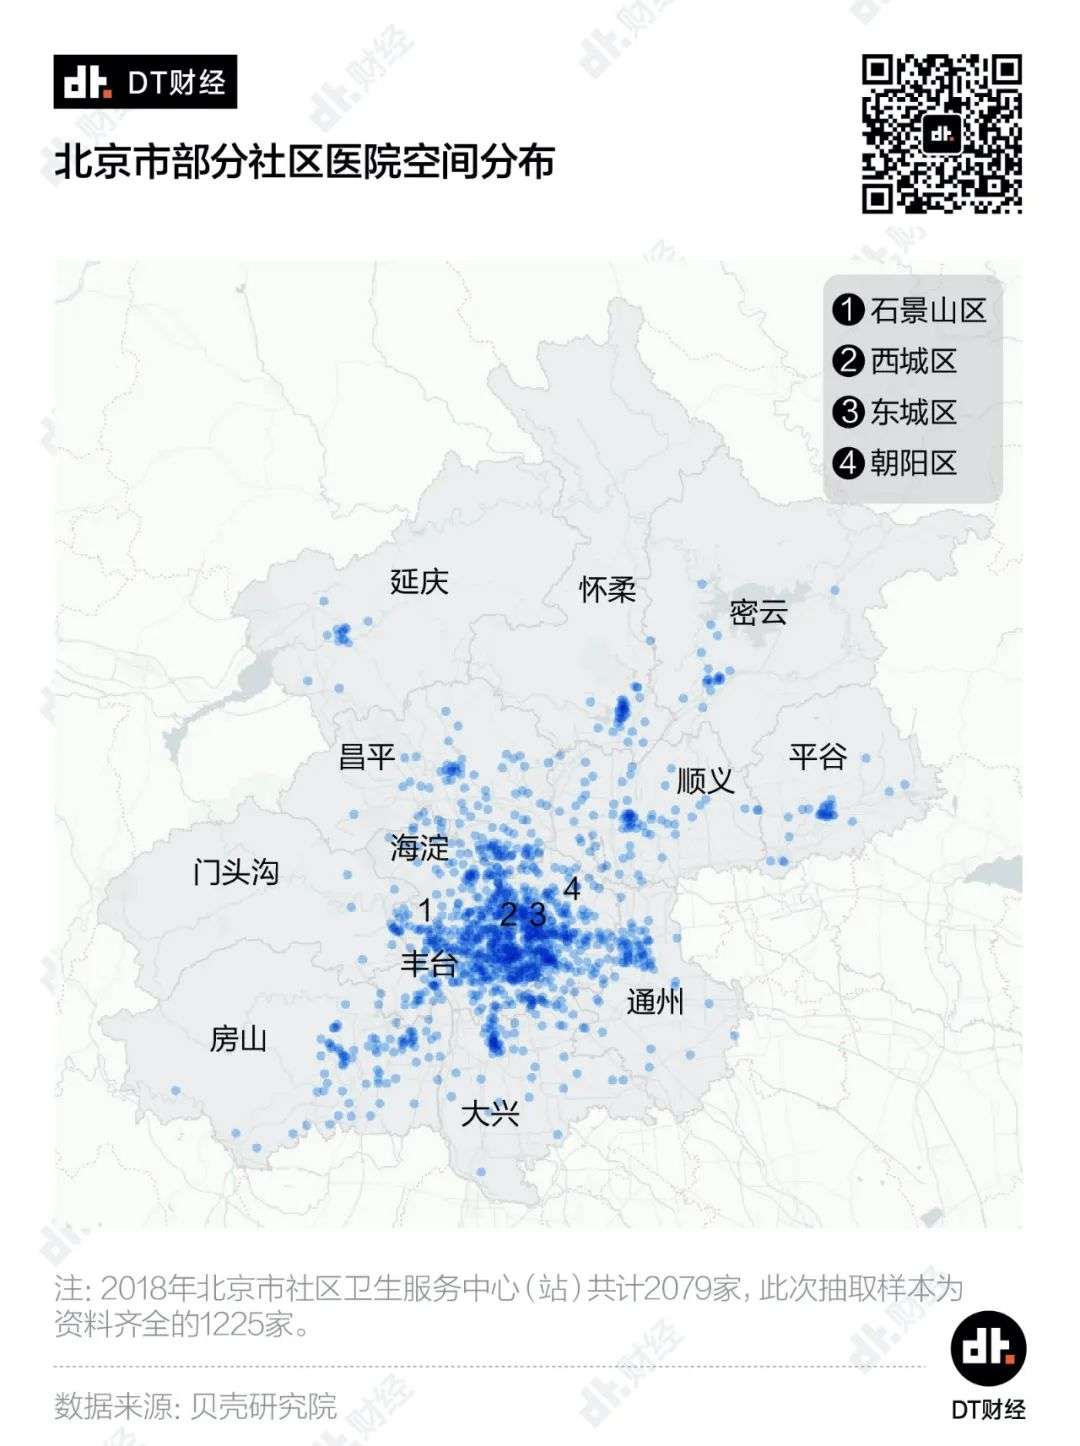 6成小区500米内有社区医院，北京医疗网络潜力有多大？